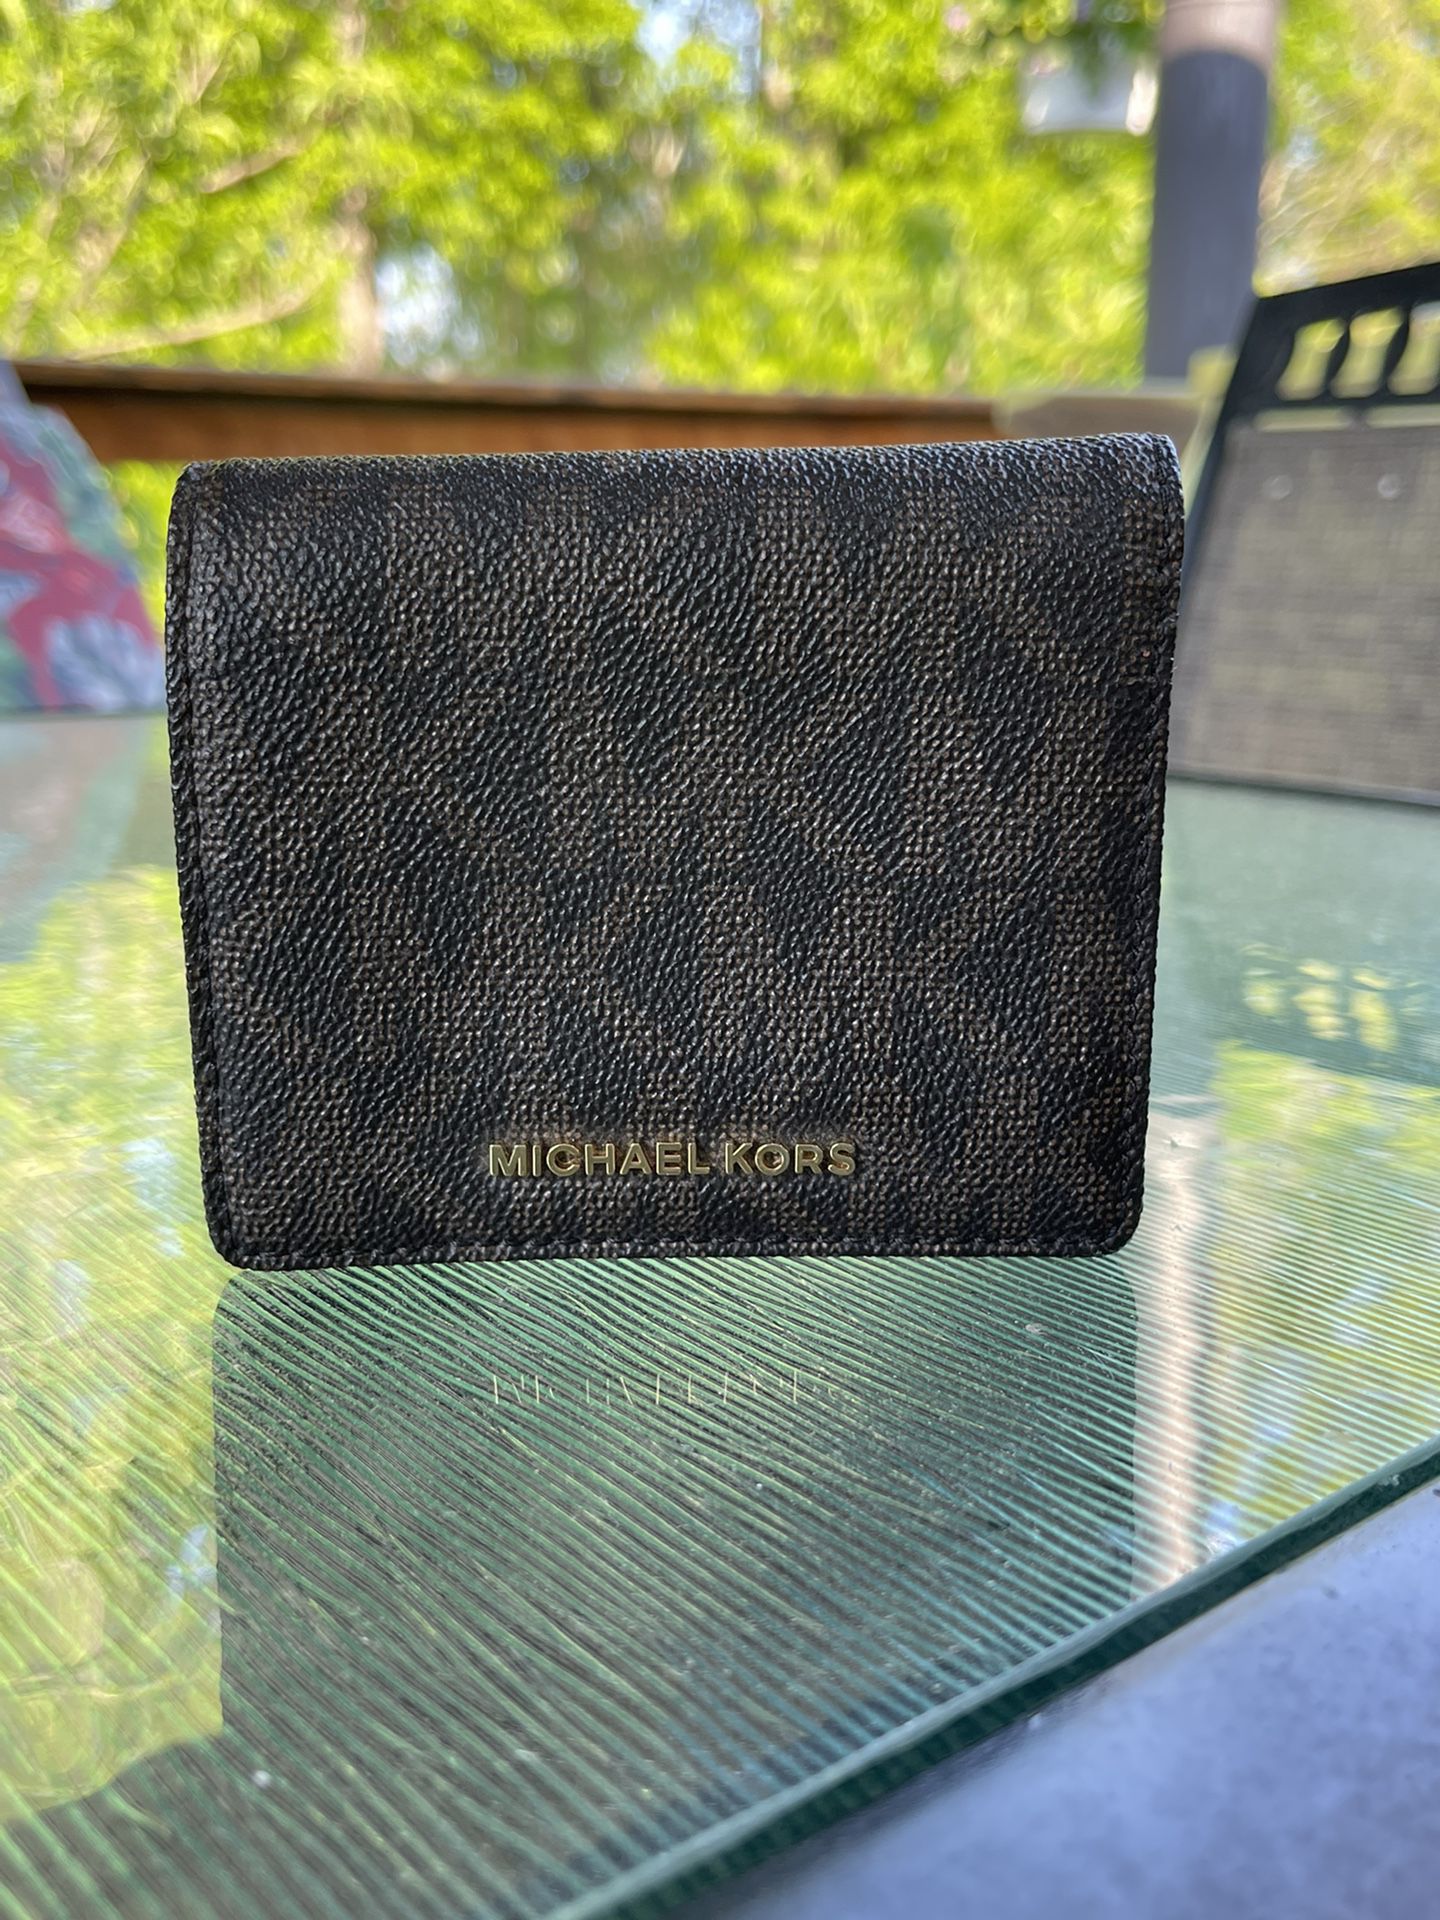 Micheal Kors Wallet